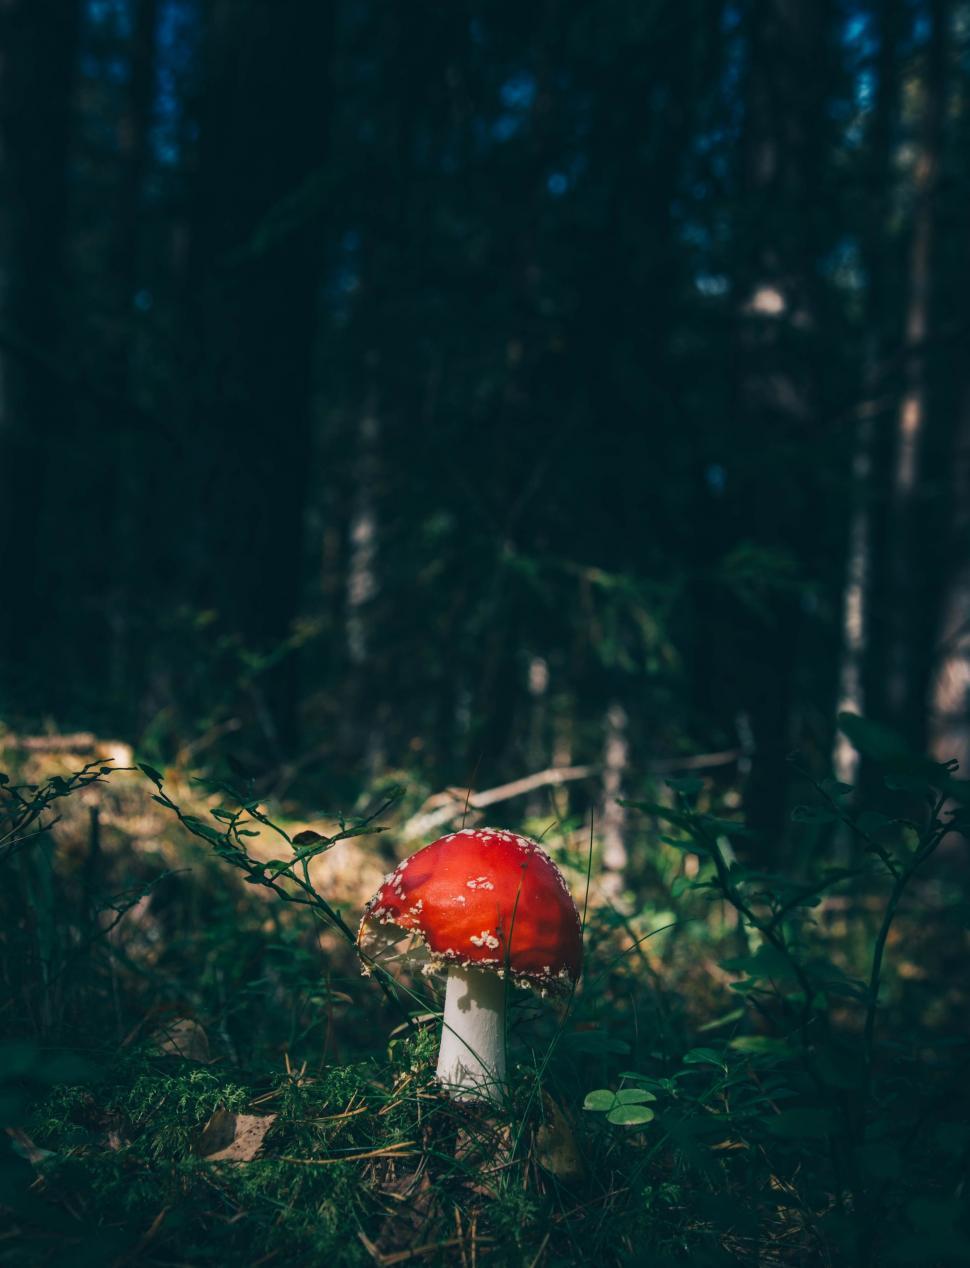 Free Image of Red Mushroom  